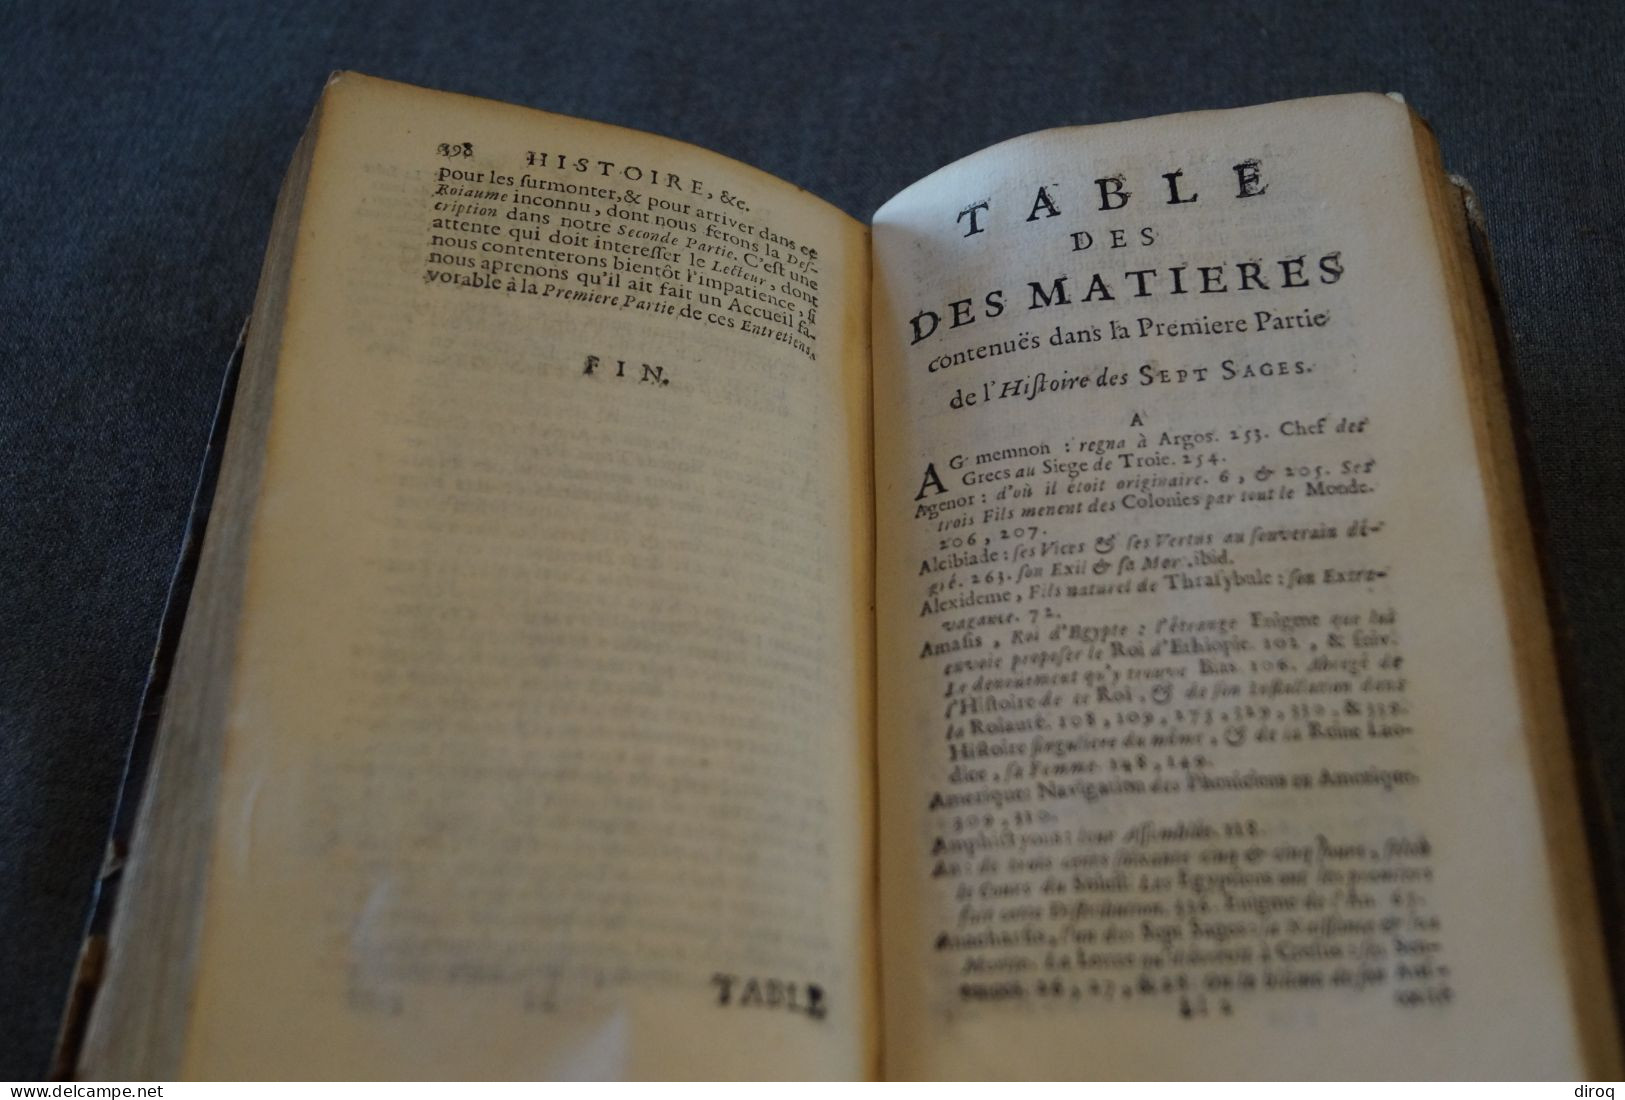 RARE,1714,Histoire des Sept Sages,Par Me. De Larrey,Conseil du Roi de Prusse,398 pages + table,17,5 Cm./10 Cm.